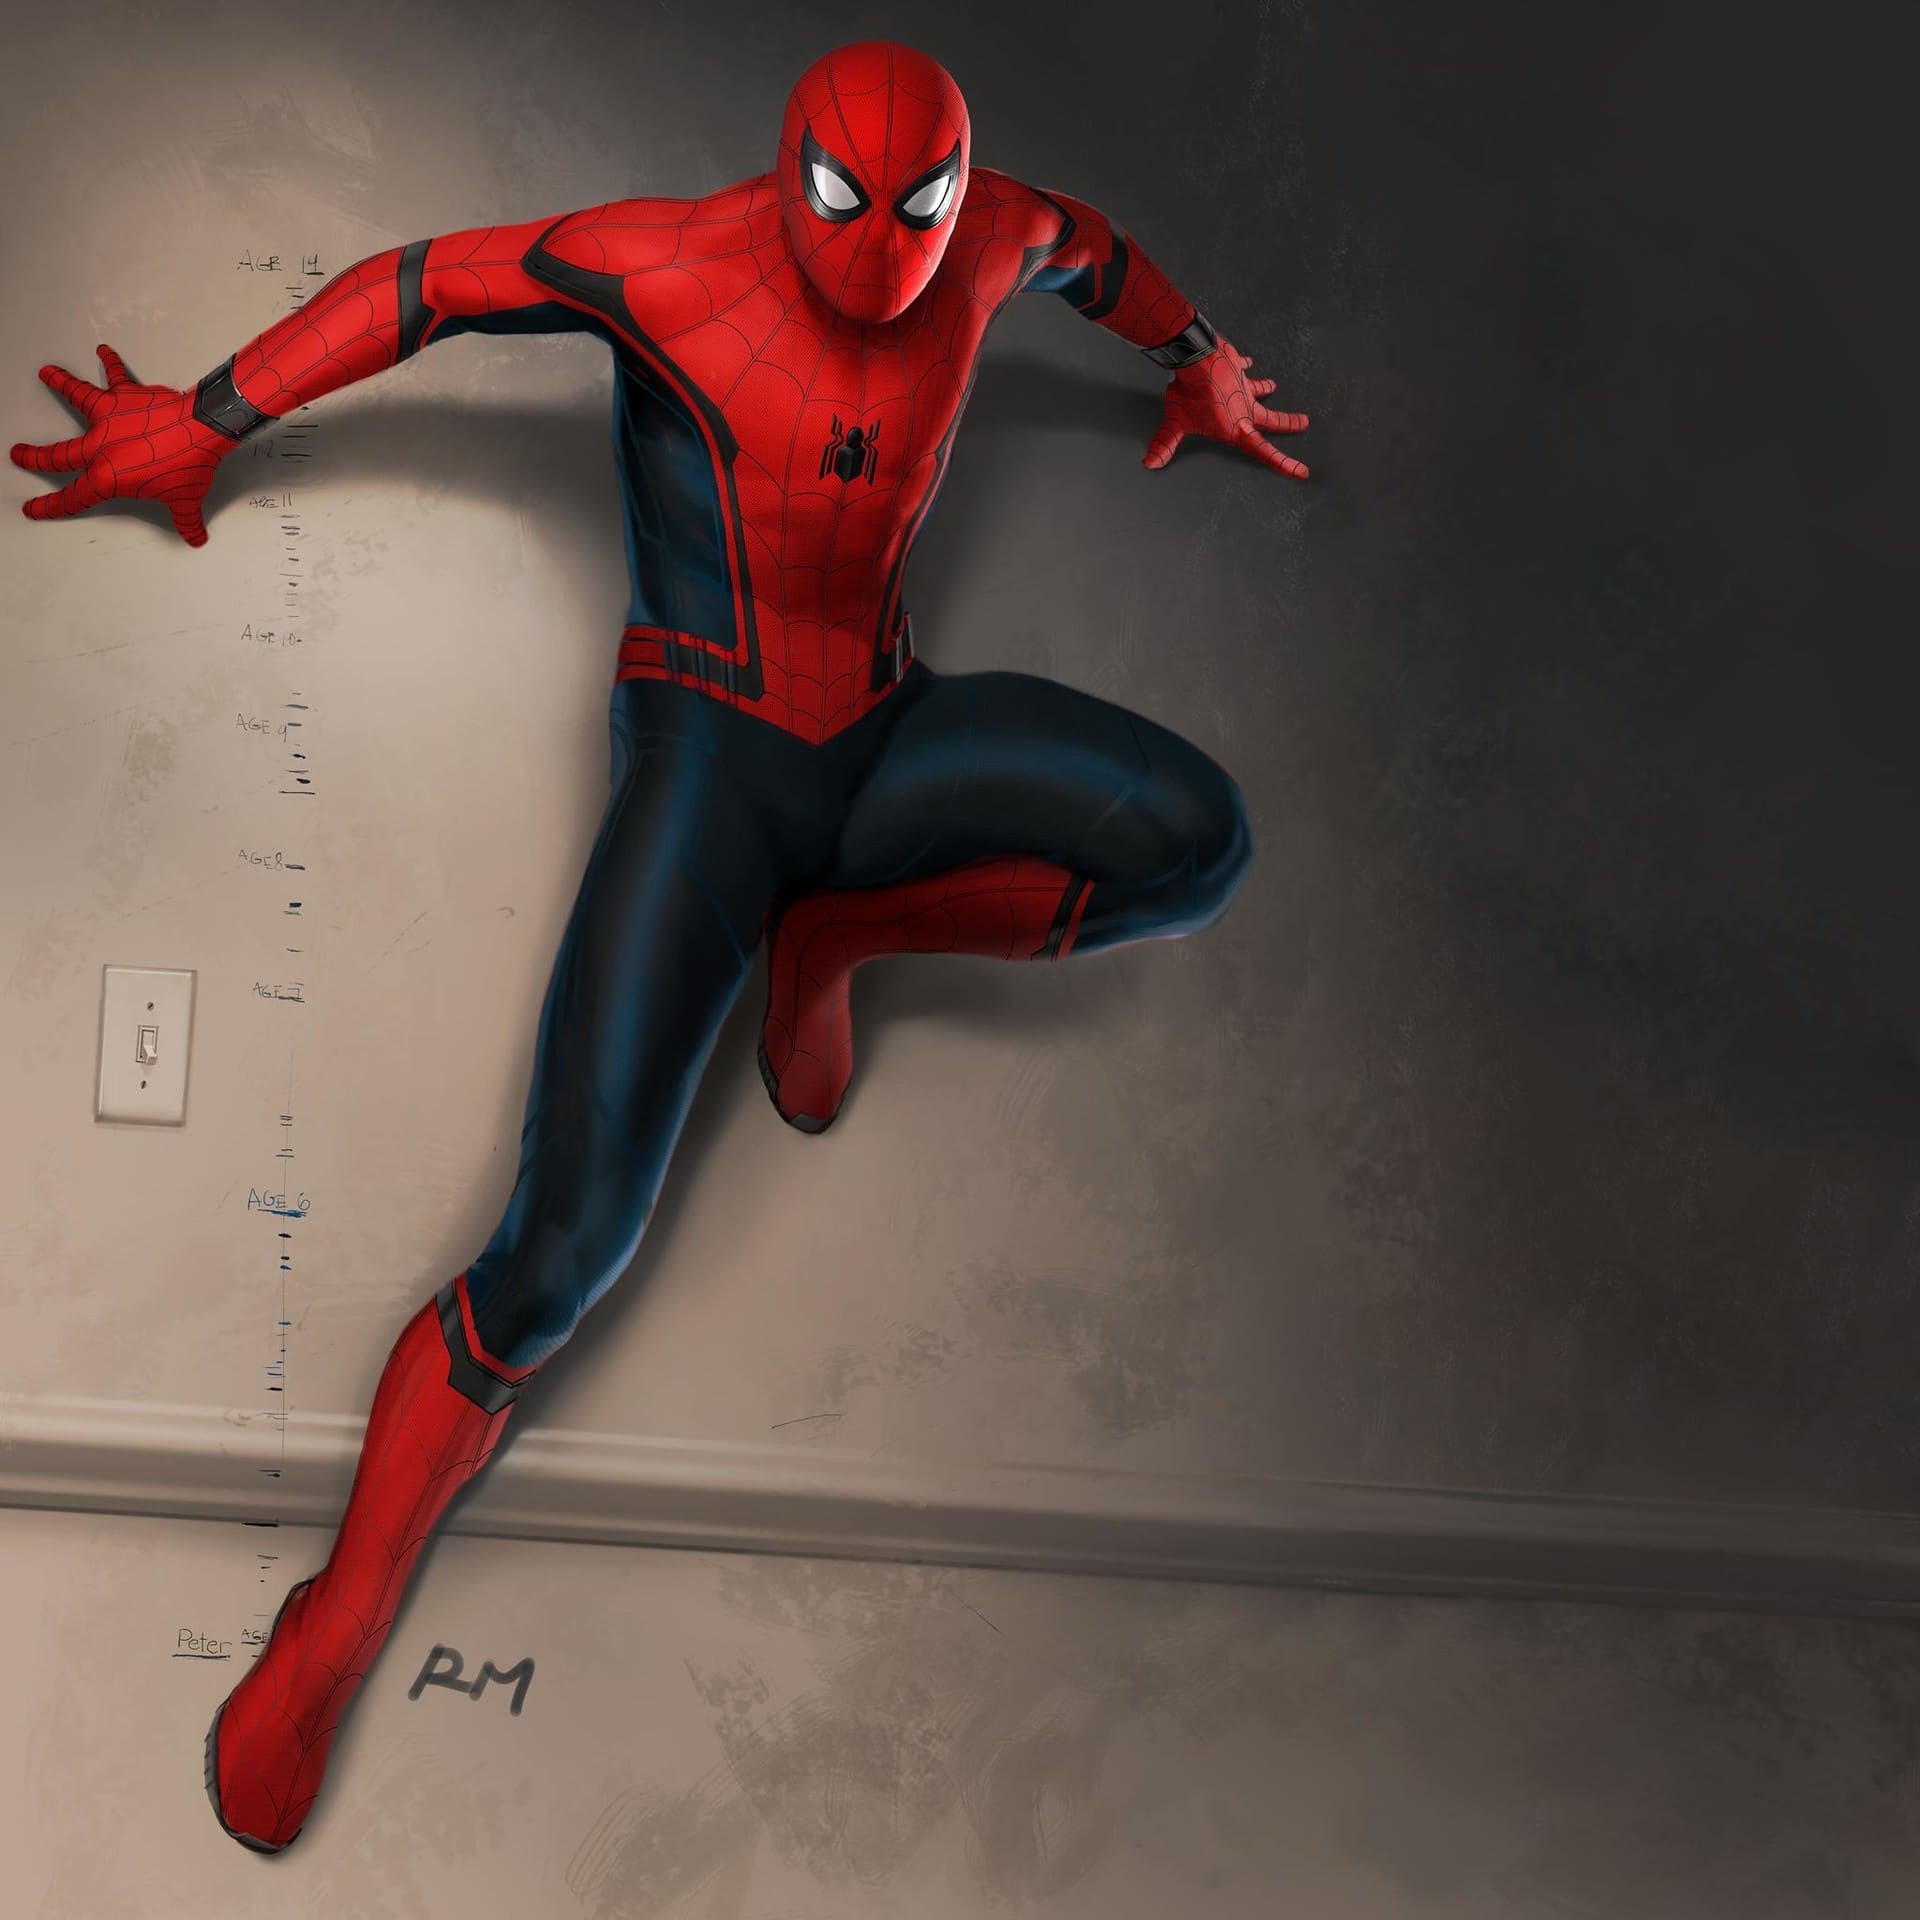 War Machine i Vision mieli pojawić się w filmie „Spider-Man: Homecoming”. Nowa galeria grafik